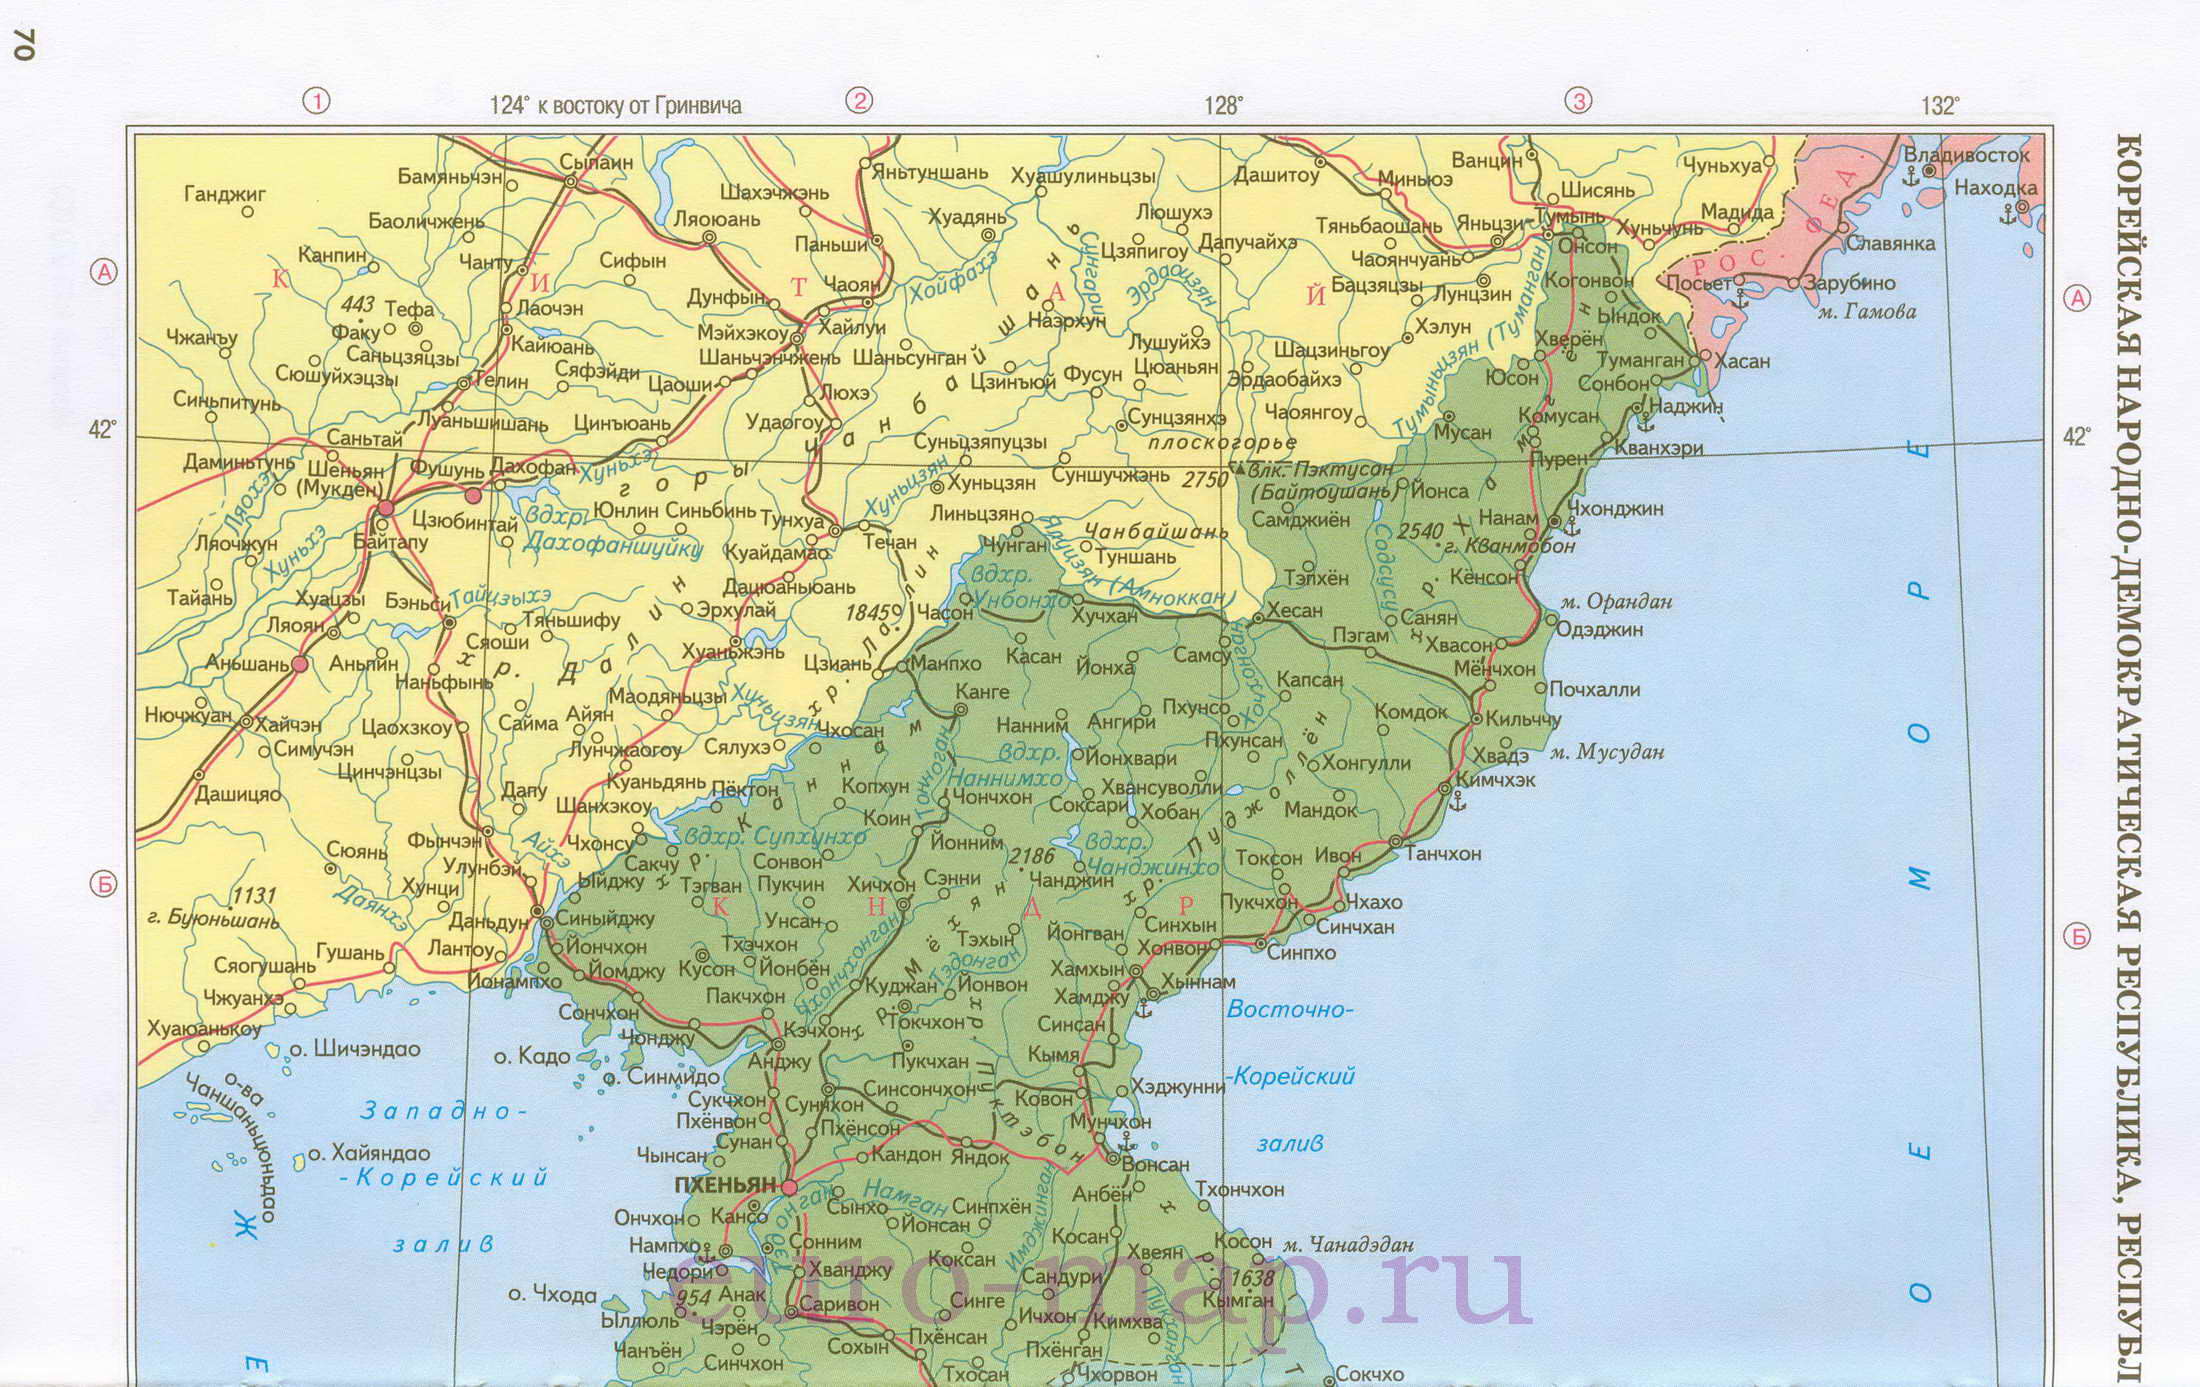 Карта КНДР и Южной Кореи. Политическая карта КНДР и Южной Кореи на русскомязыке, A0 -